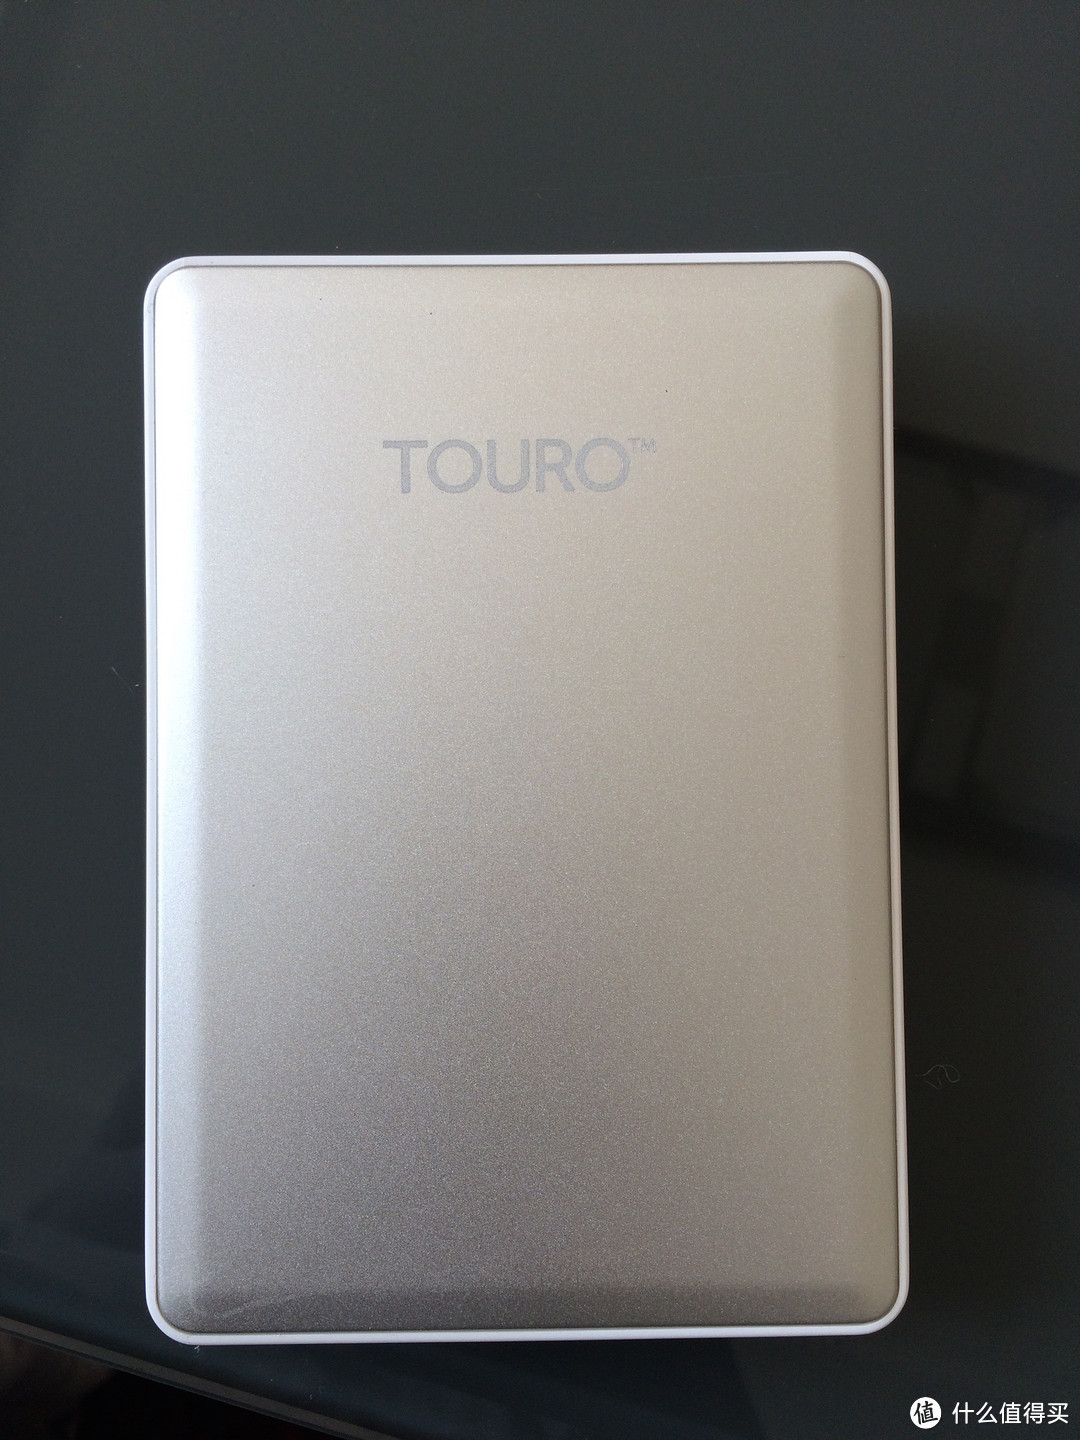 HGST TOURO S 1TB 移动硬盘 使用简评